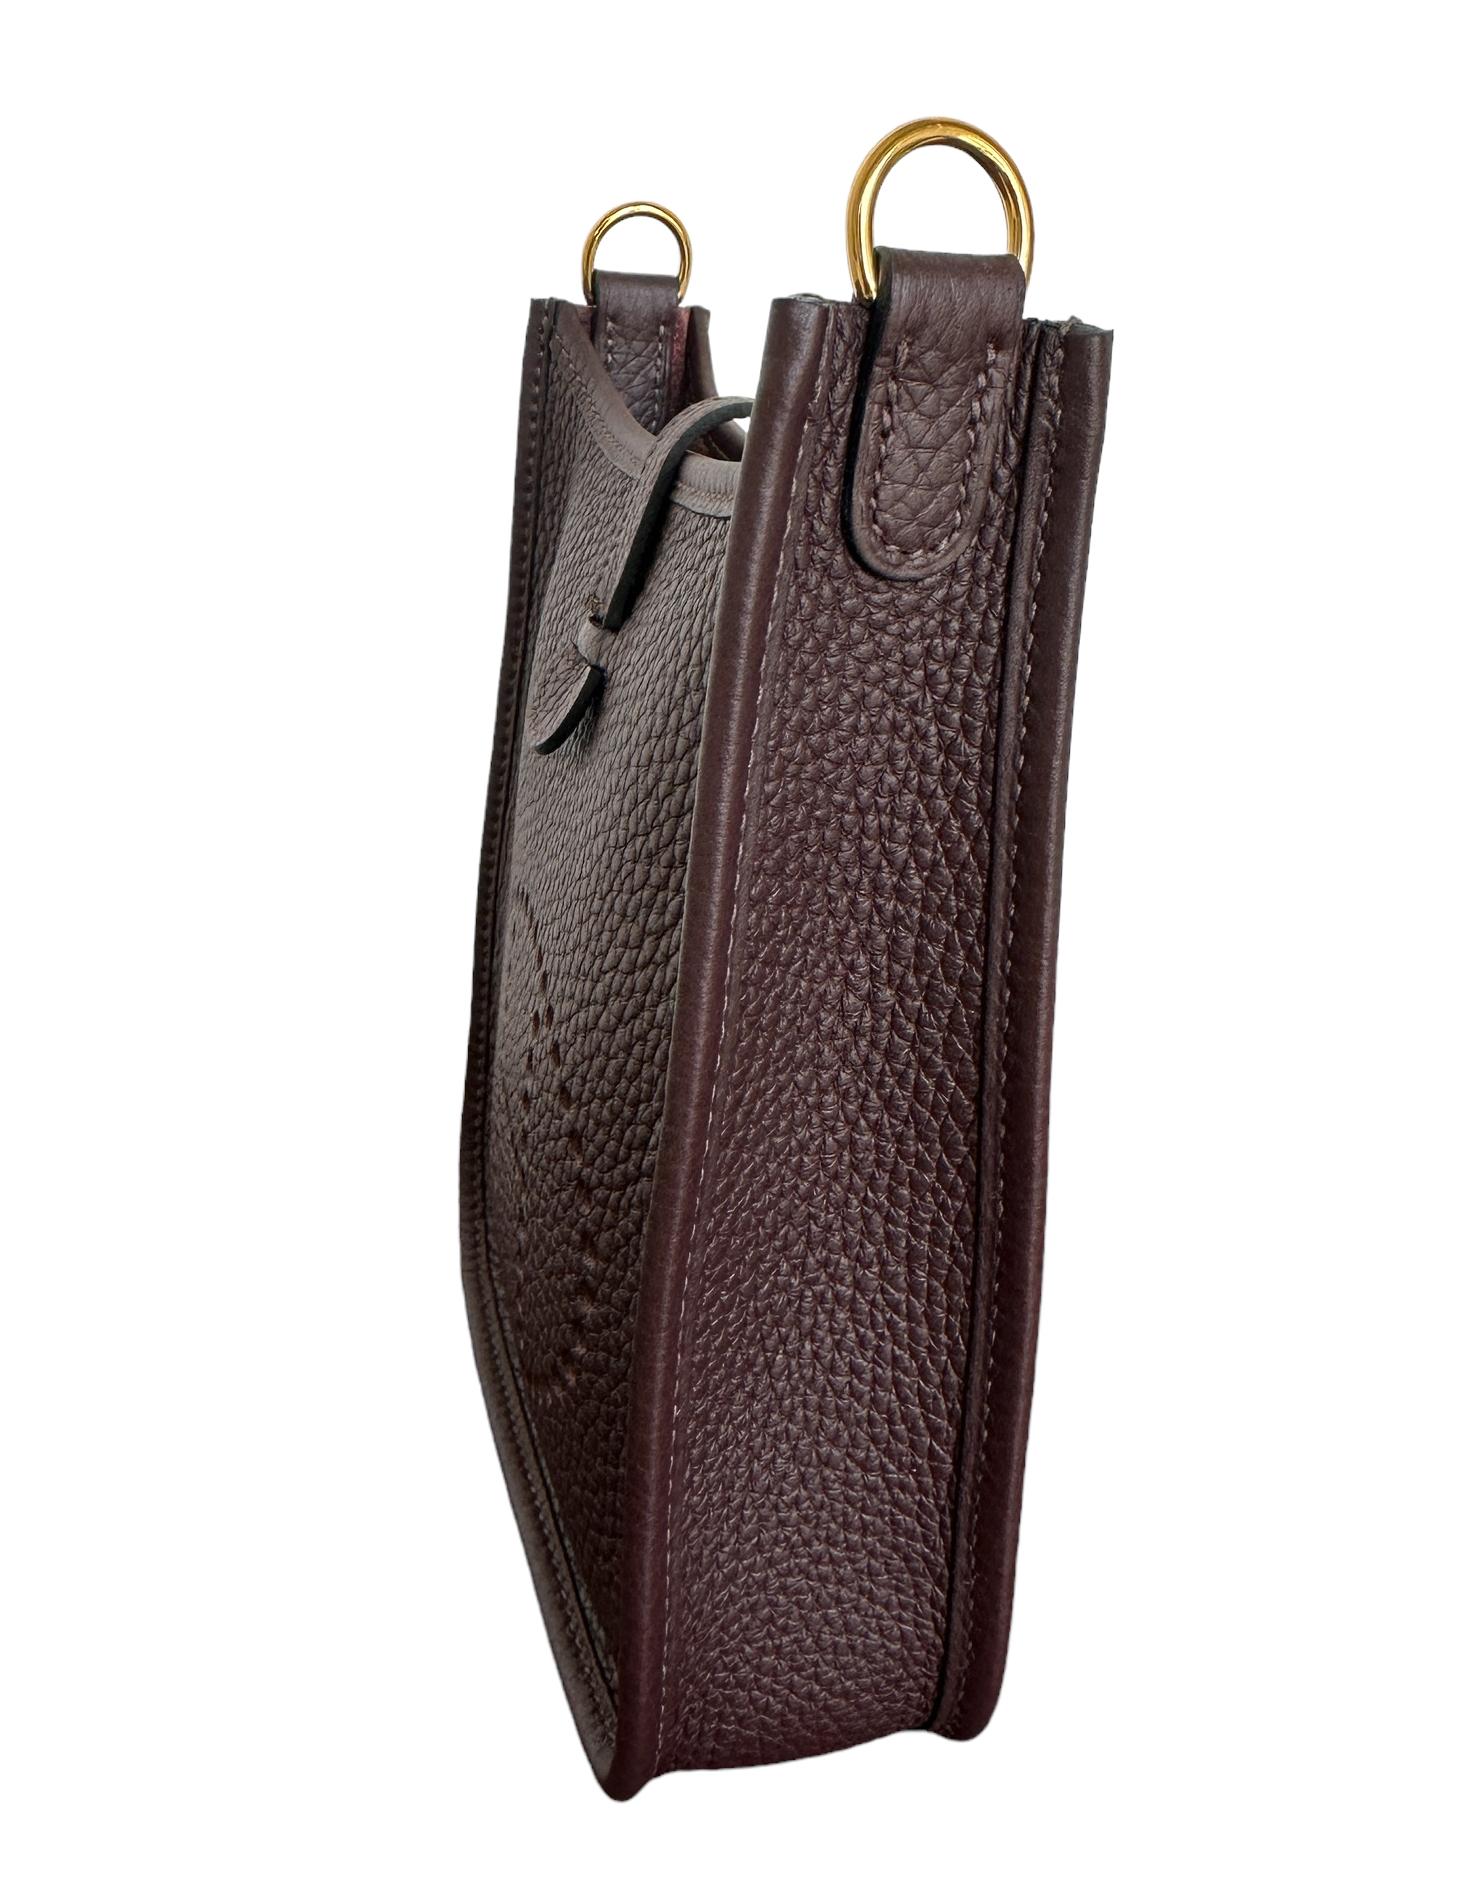 Hermès Evelyne 16 TPM Rouge Sellier Bag Gold Hardware Limited Edition Strap 2